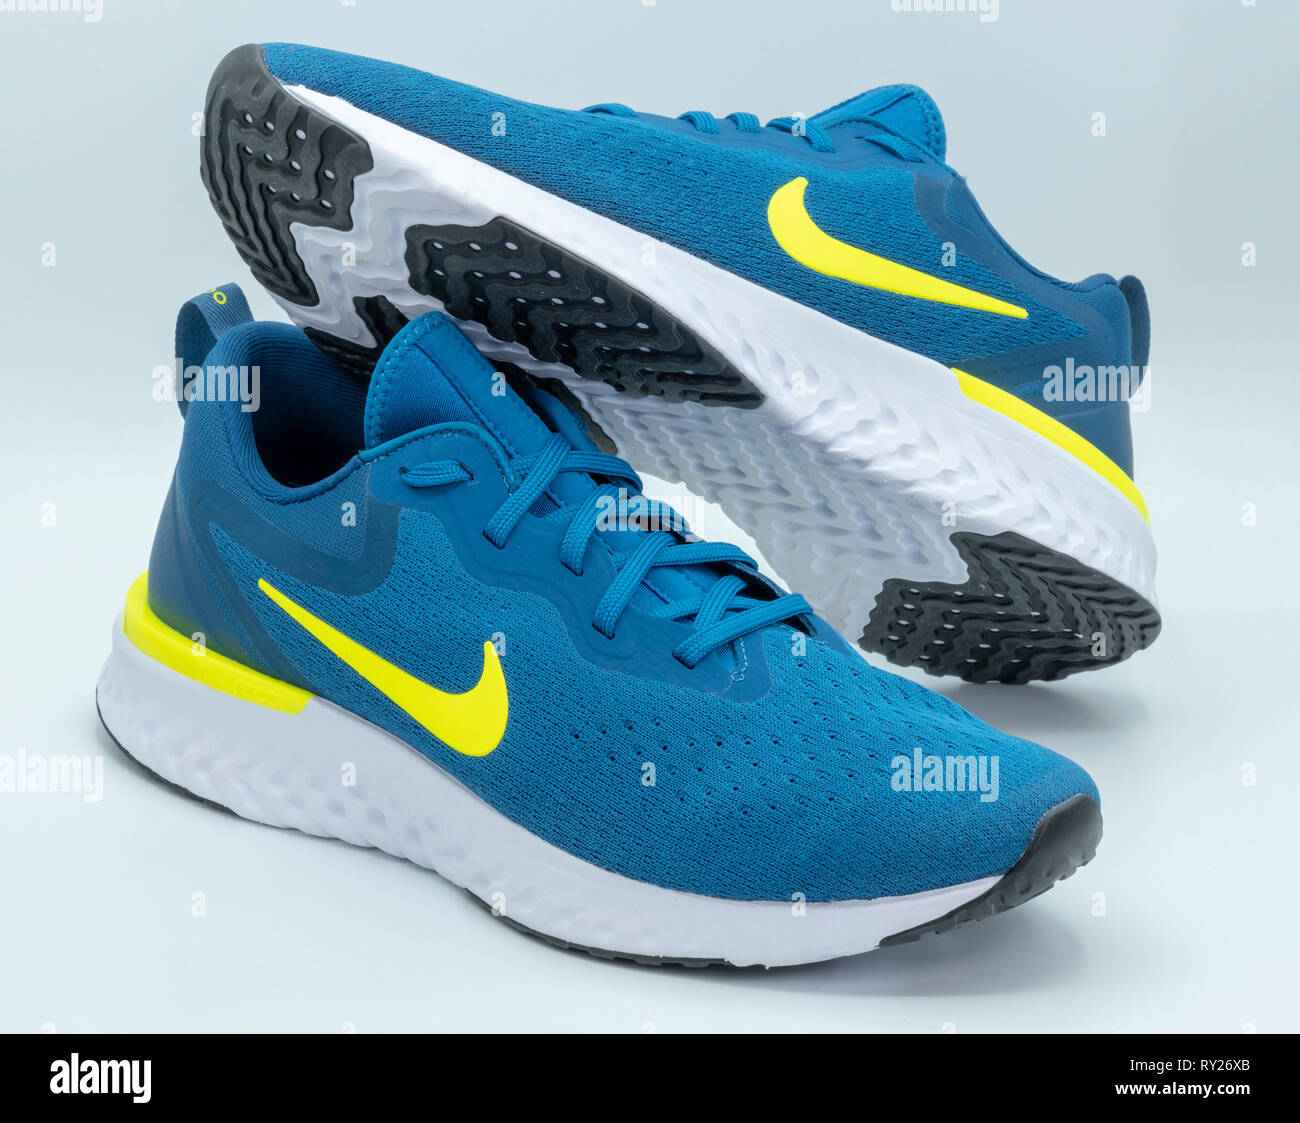 Blau Nike Odyssey reagieren Laufschuhe ausgeschnitten auf weißem  Hintergrund Stockfotografie - Alamy